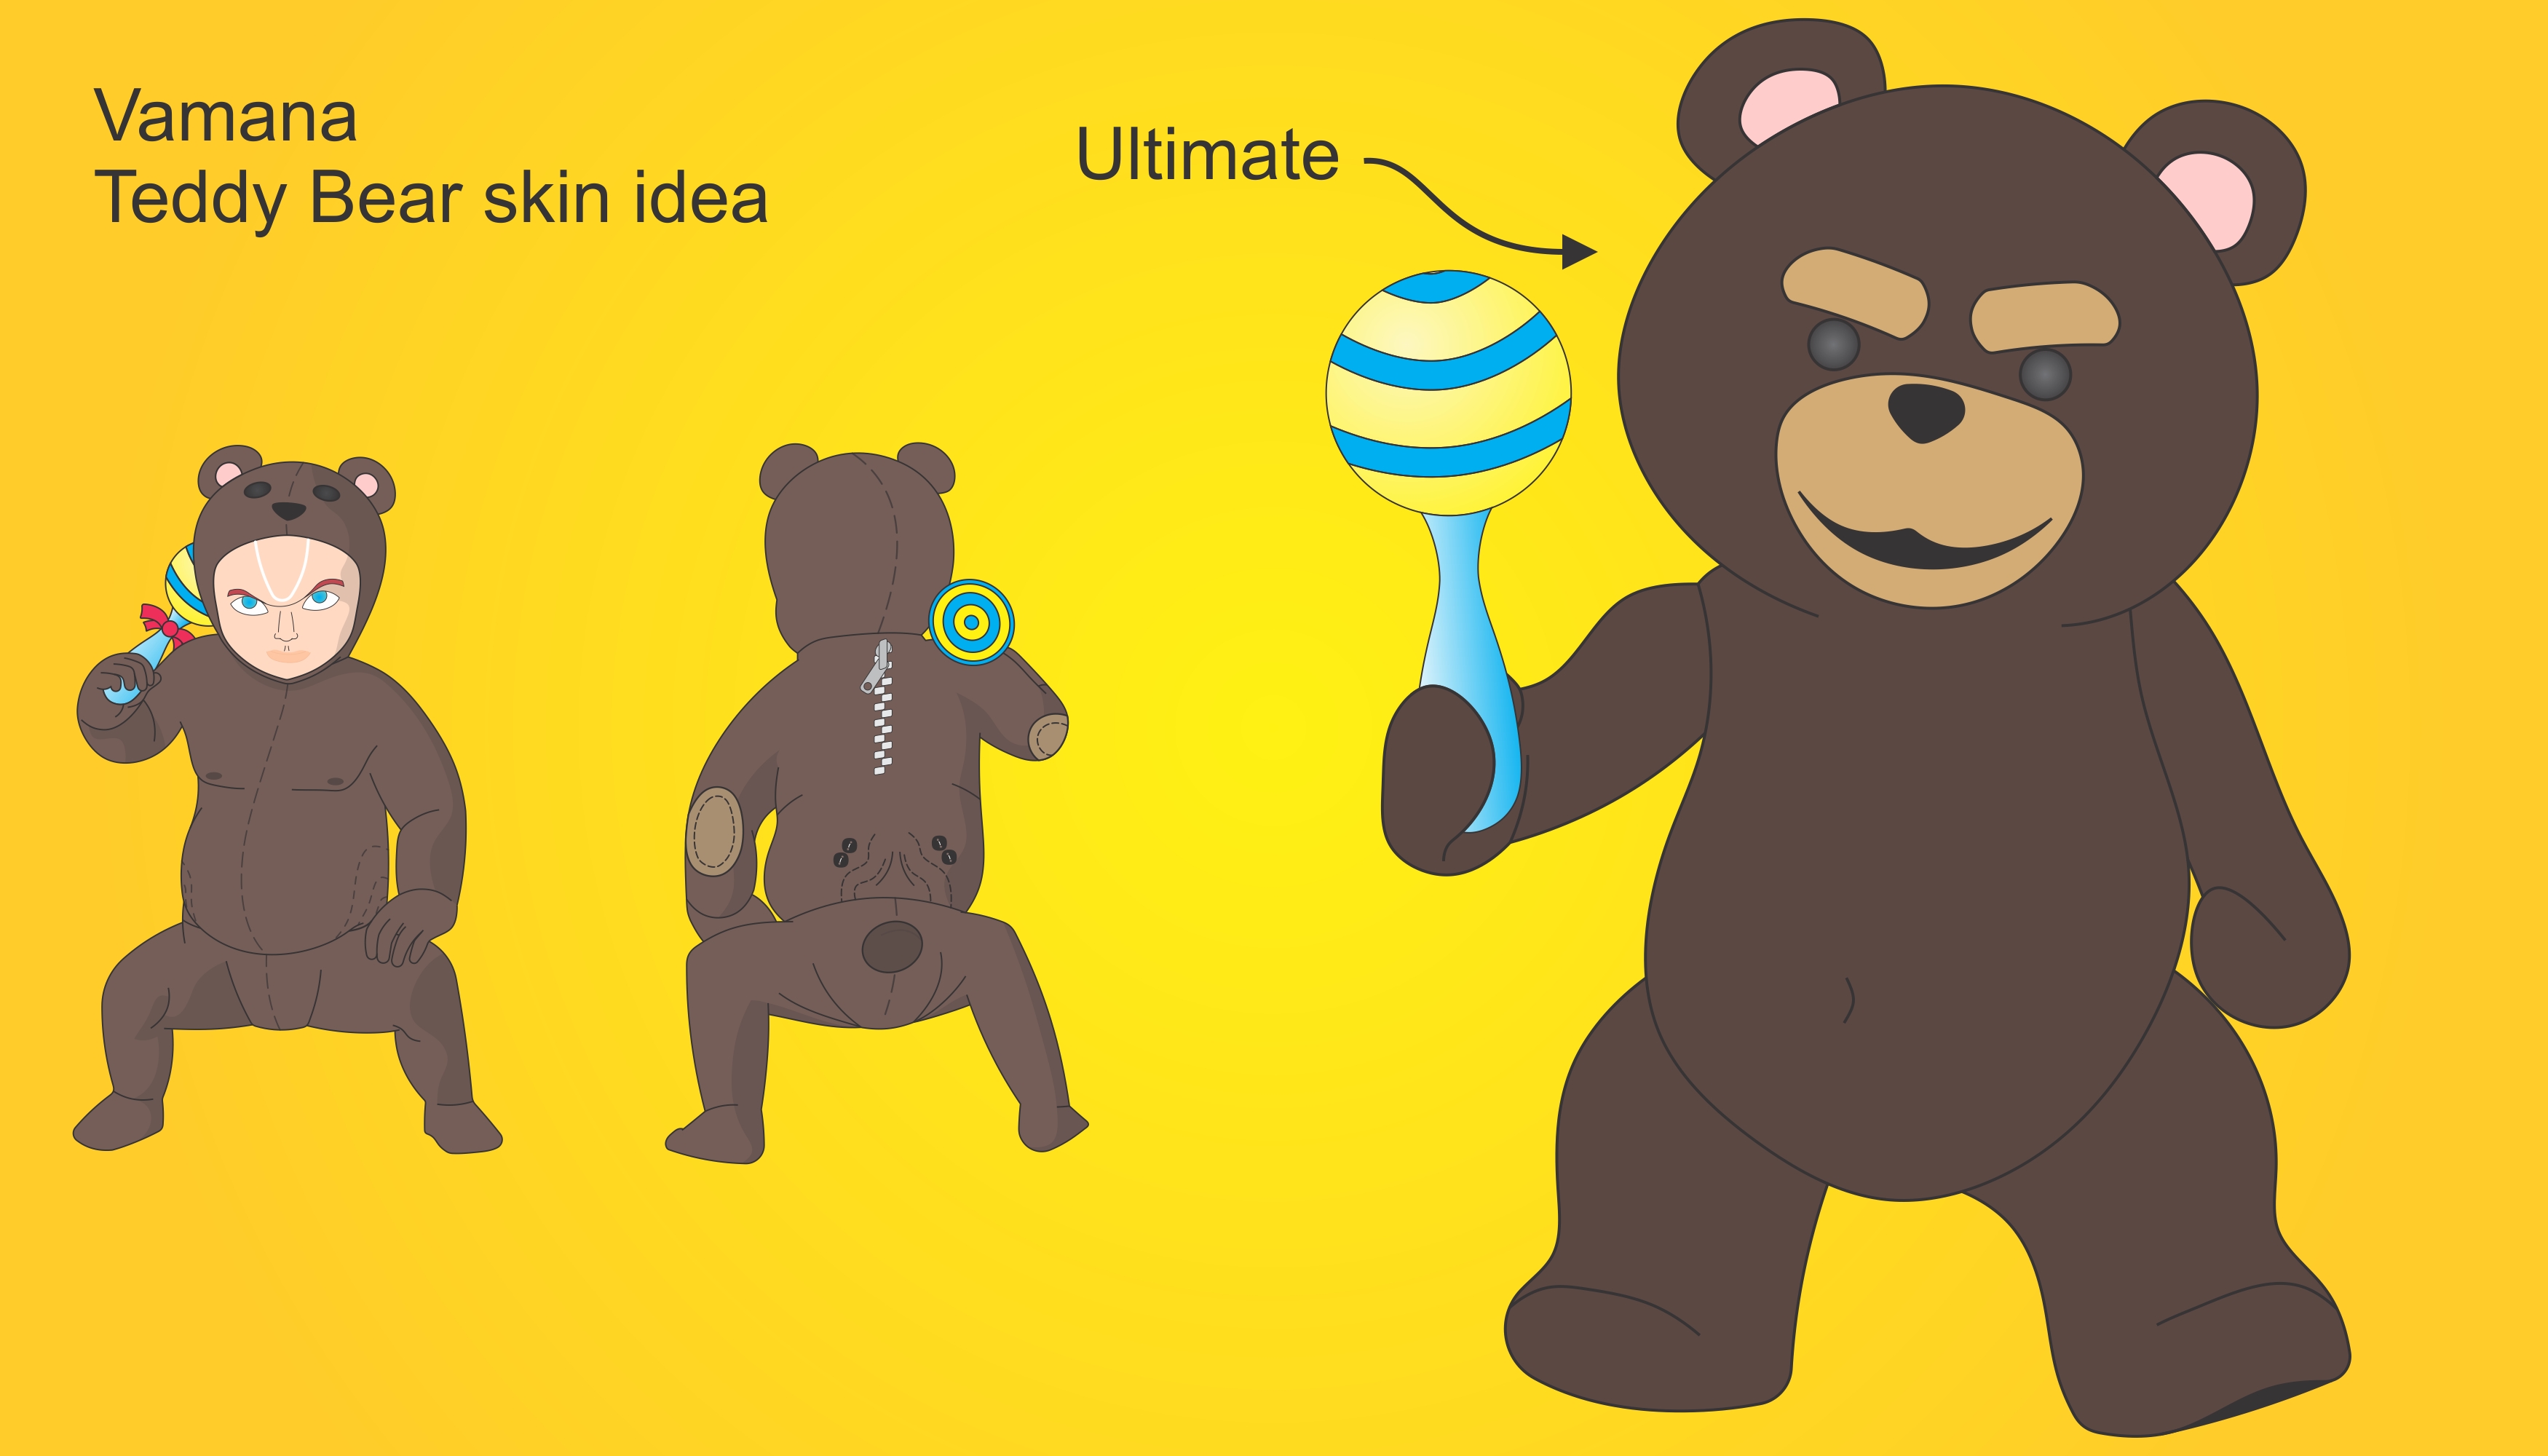 An idea for bear* skin